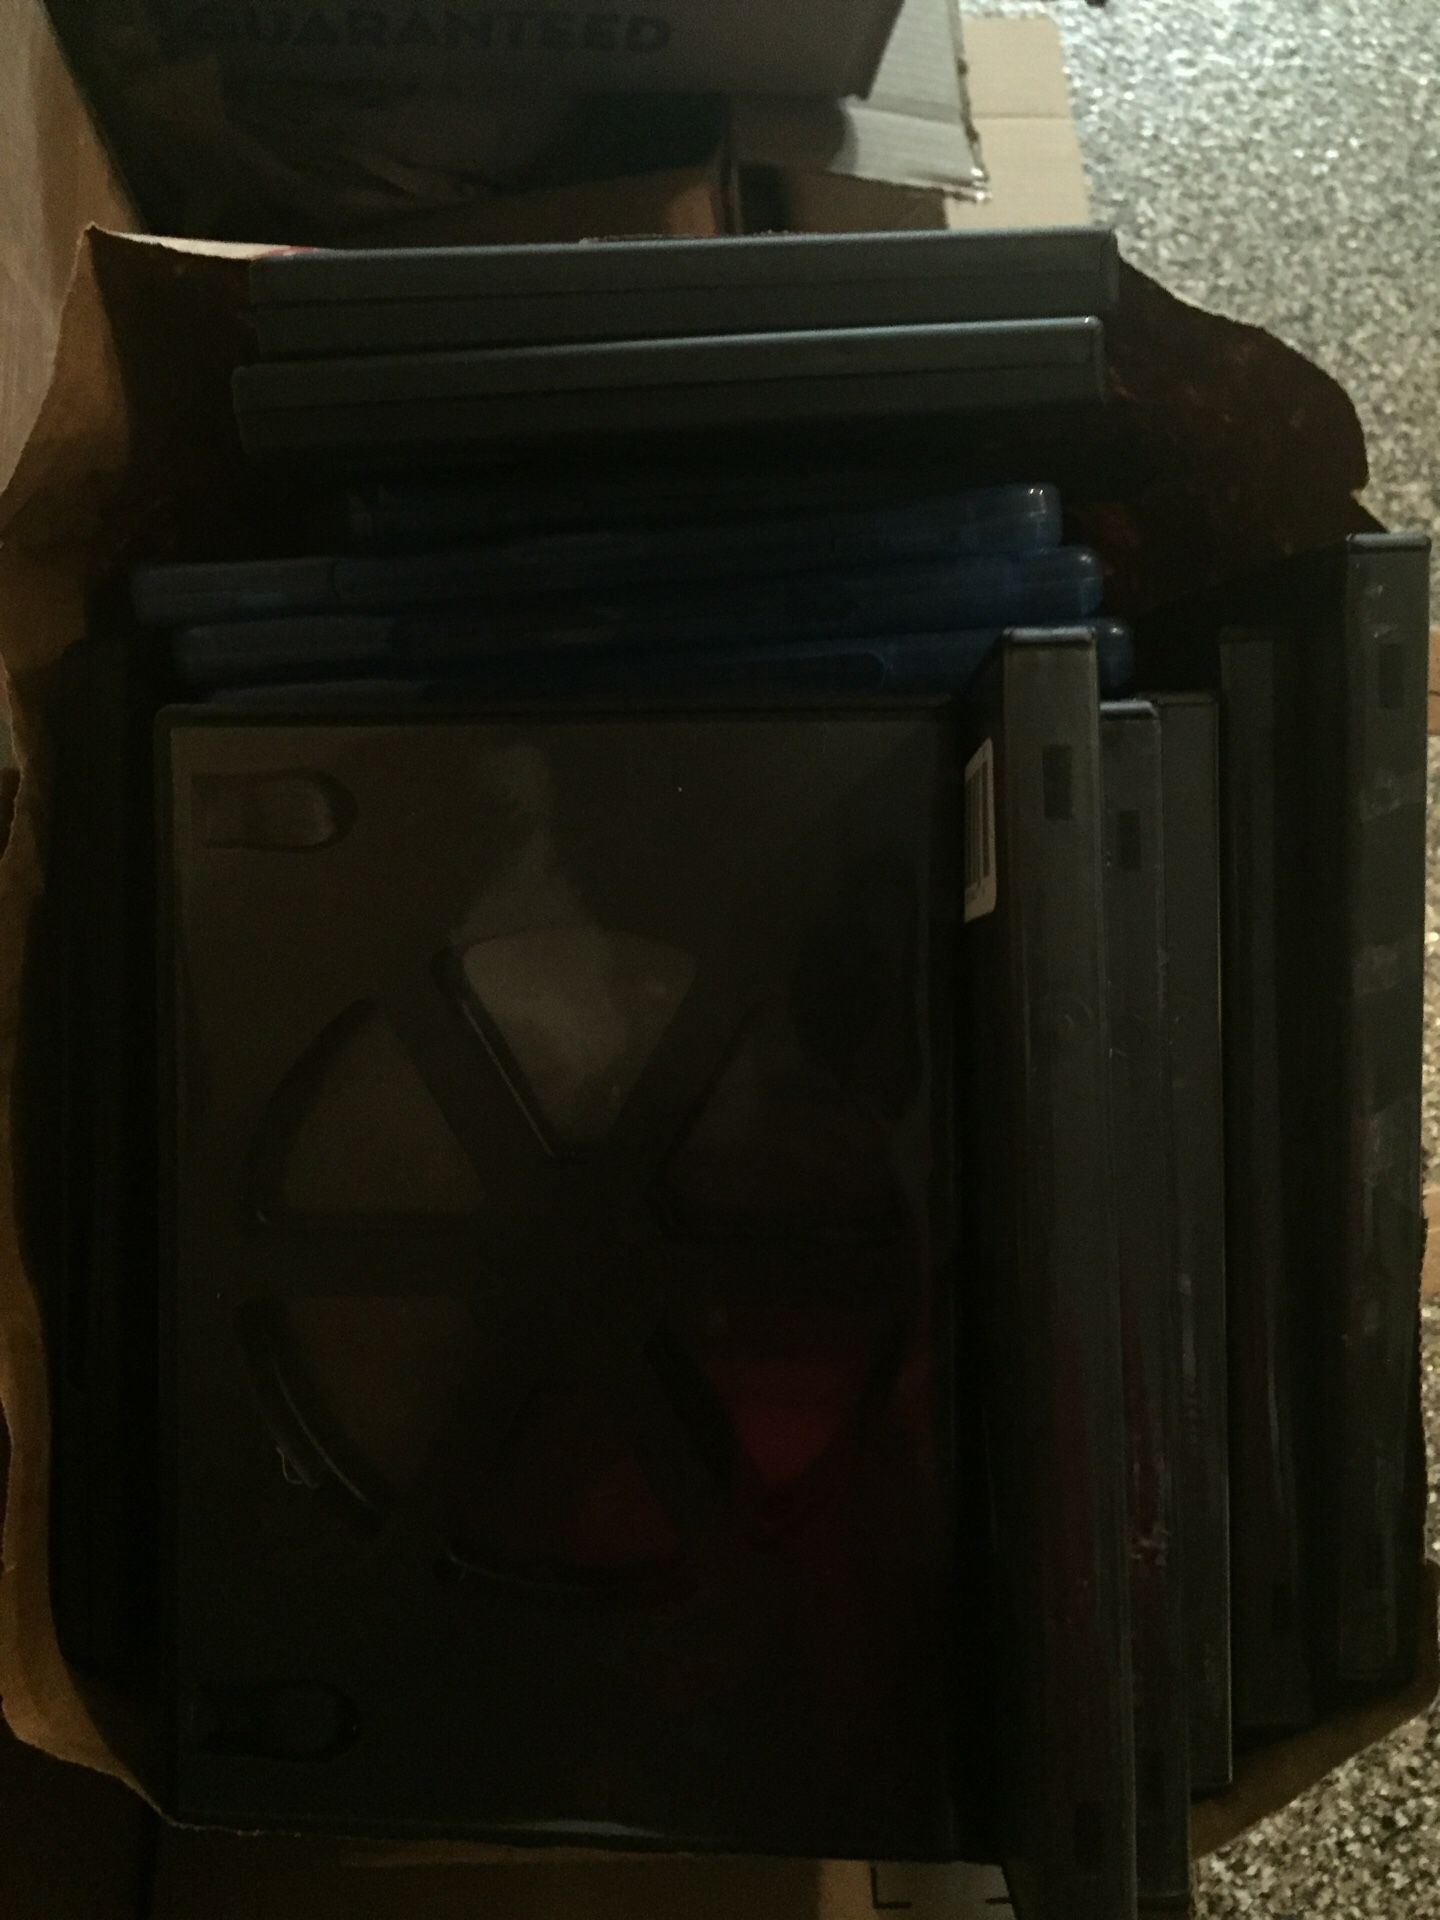 Empty DVD cases